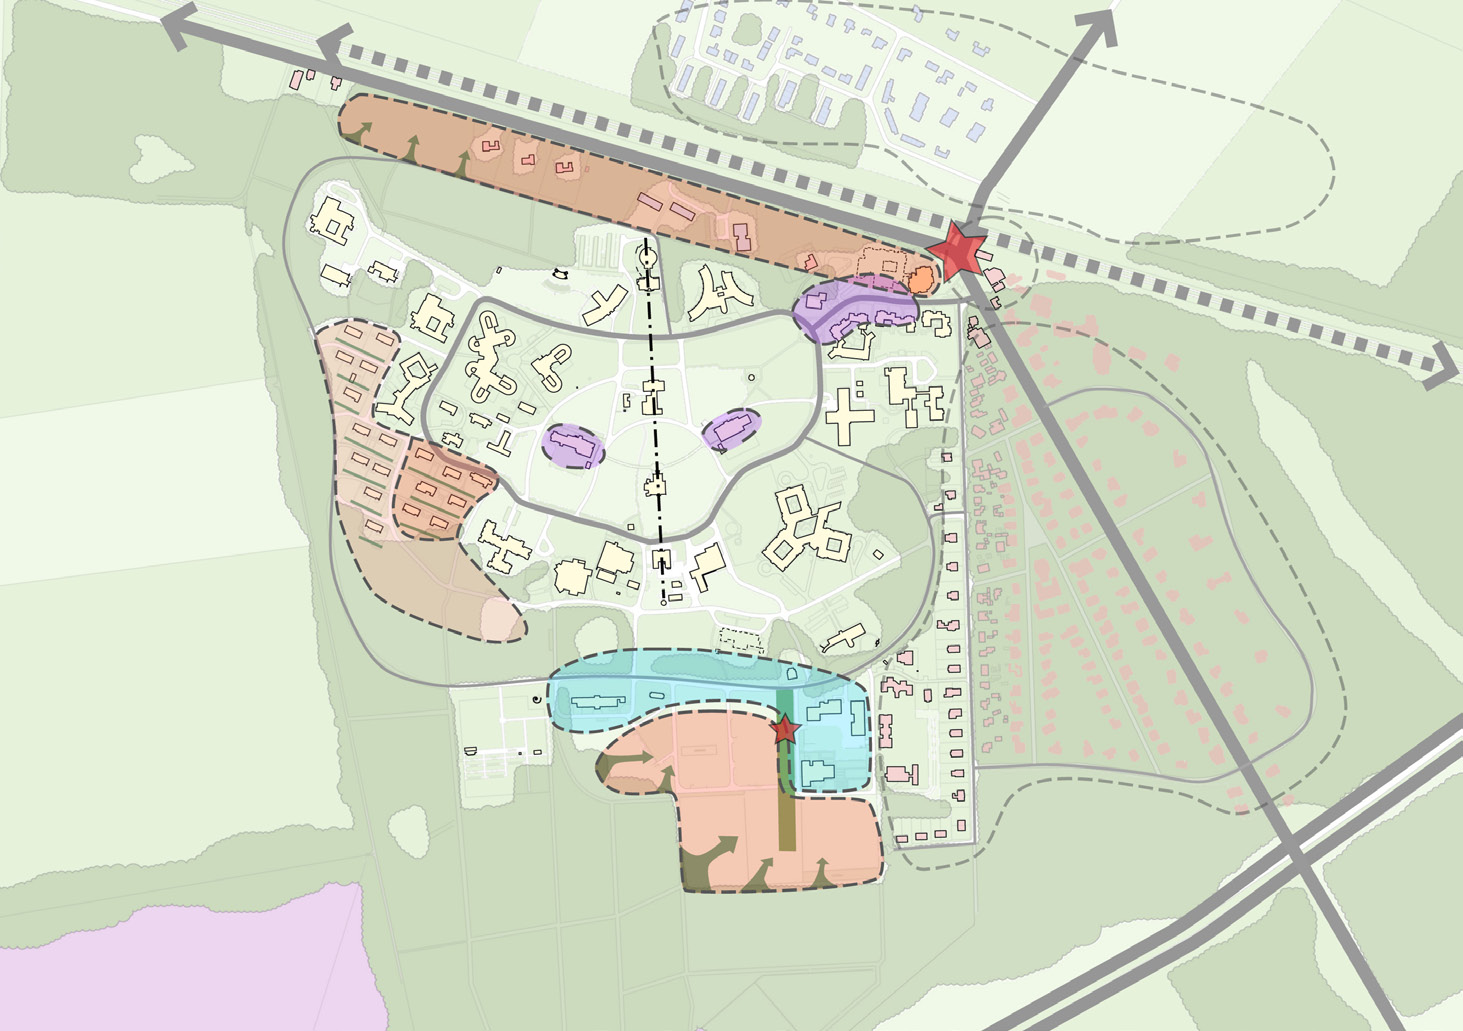 Visie op hoofdlijnen Concept Pro Persona wil haar zorgtaken concentreren op de locatie (zorggebied). In de directe schil rondom de middenas zijn alle zorggebouwen gelokaliseerd.